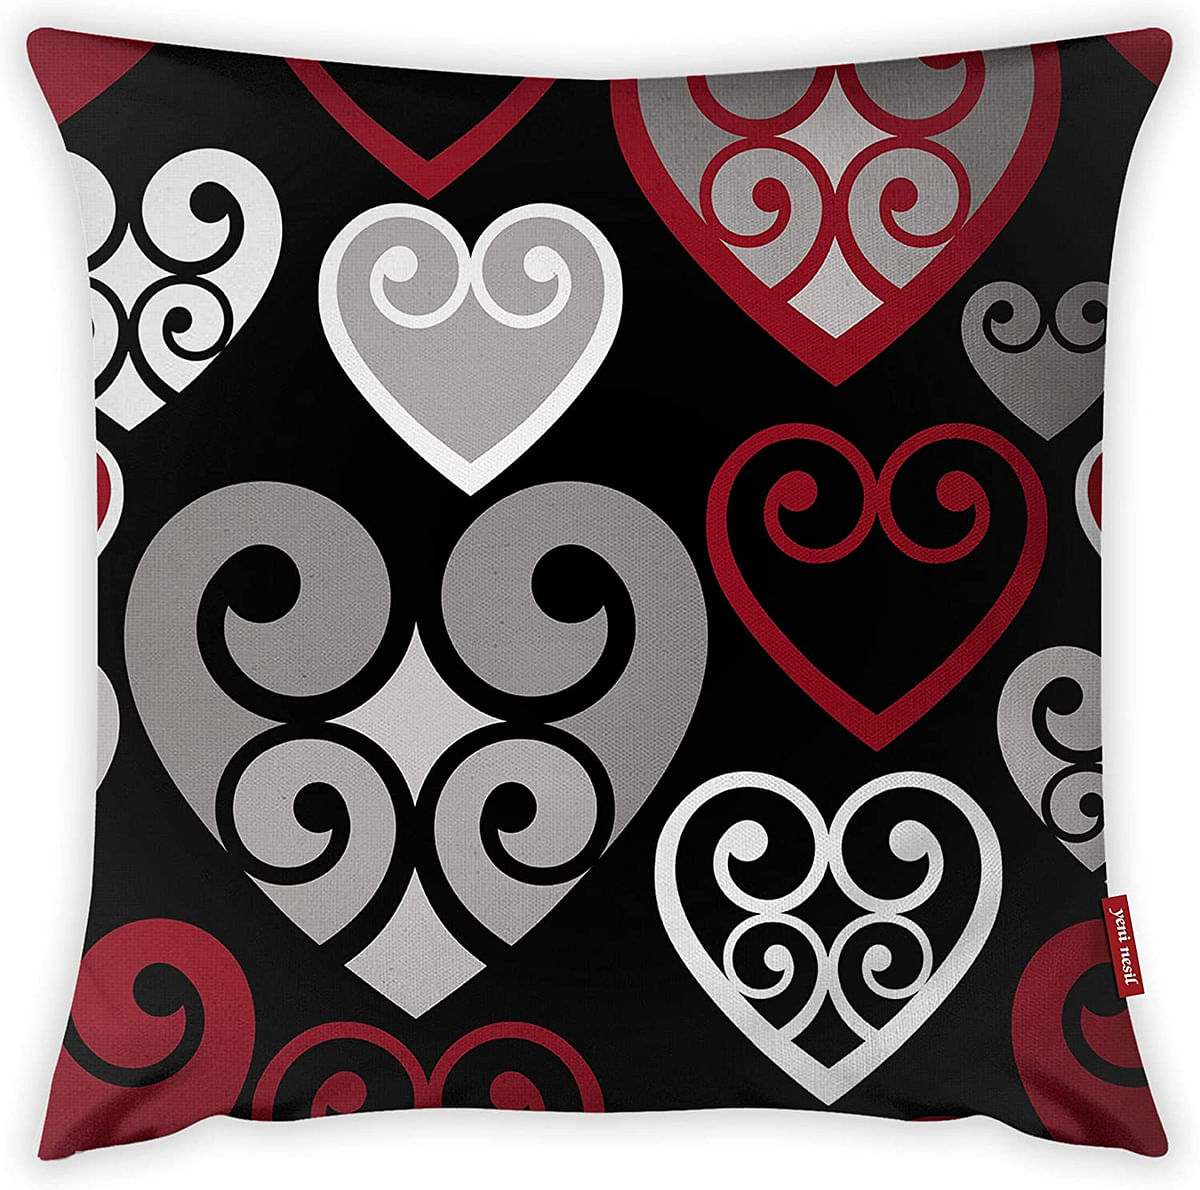 Mon Desire Decorative Throw Pillow Cover, Multi-Colour, 44 x 44 cm, MDSYST2986